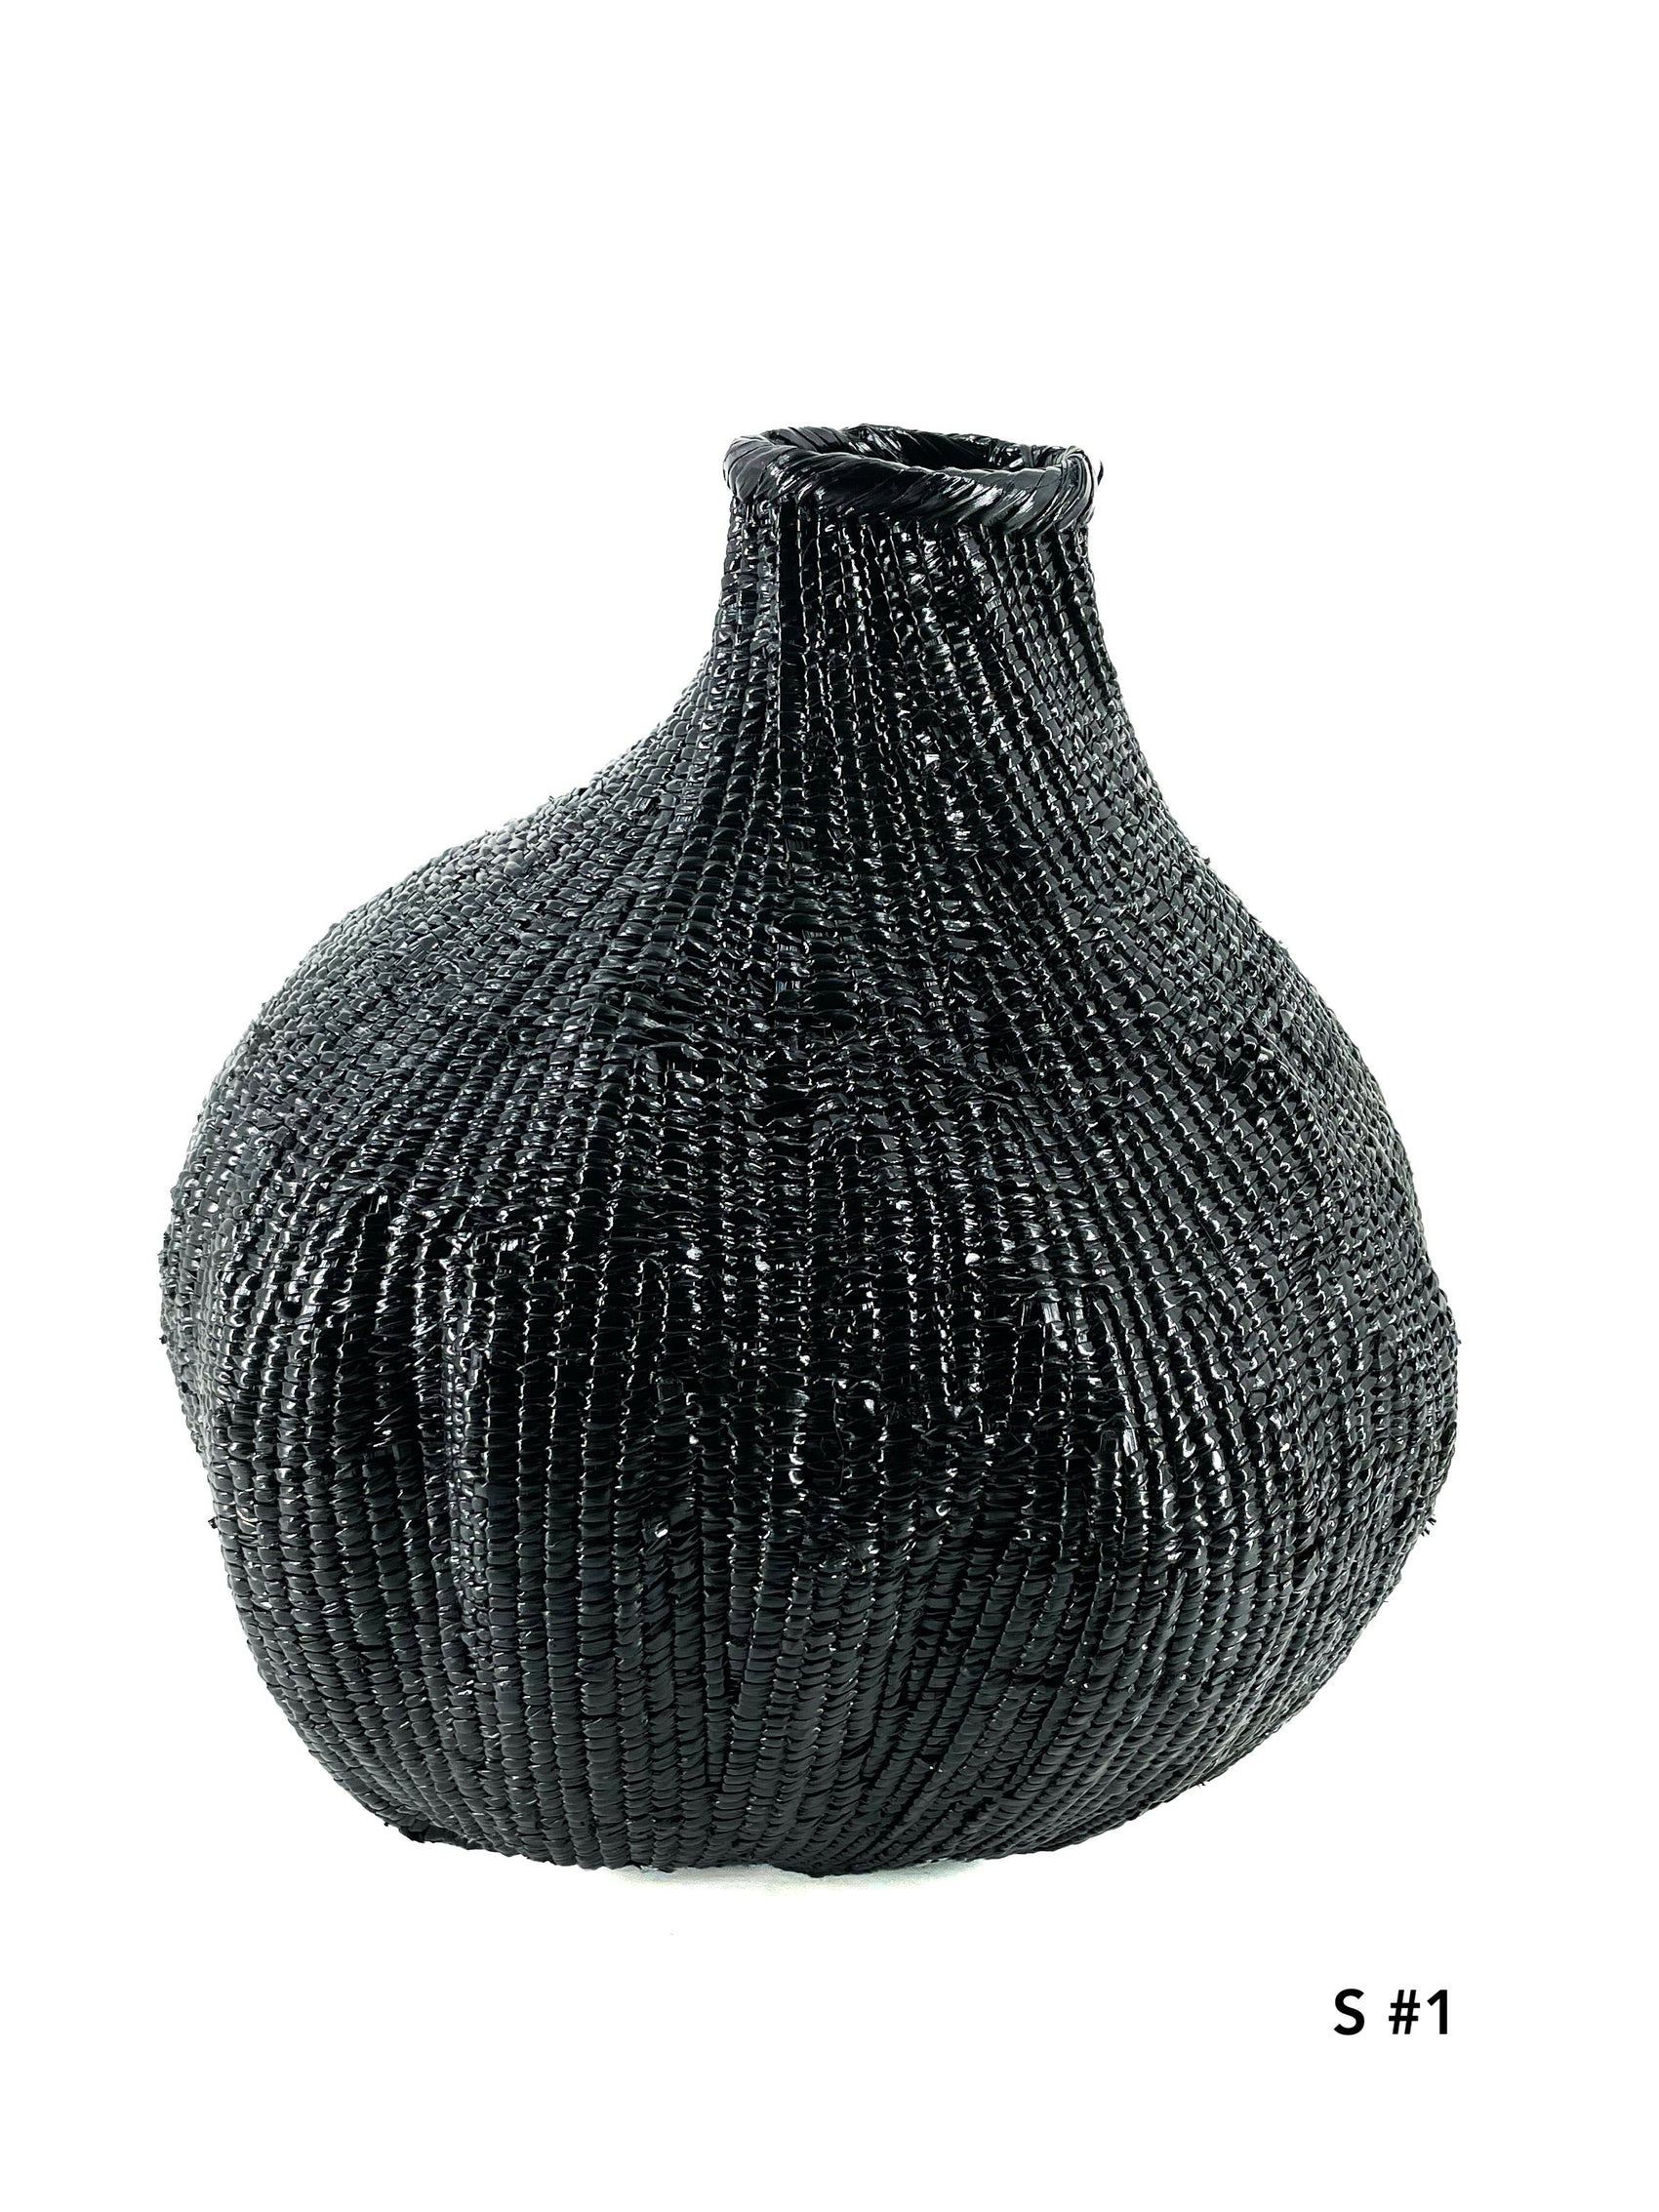 Garlic gourd black